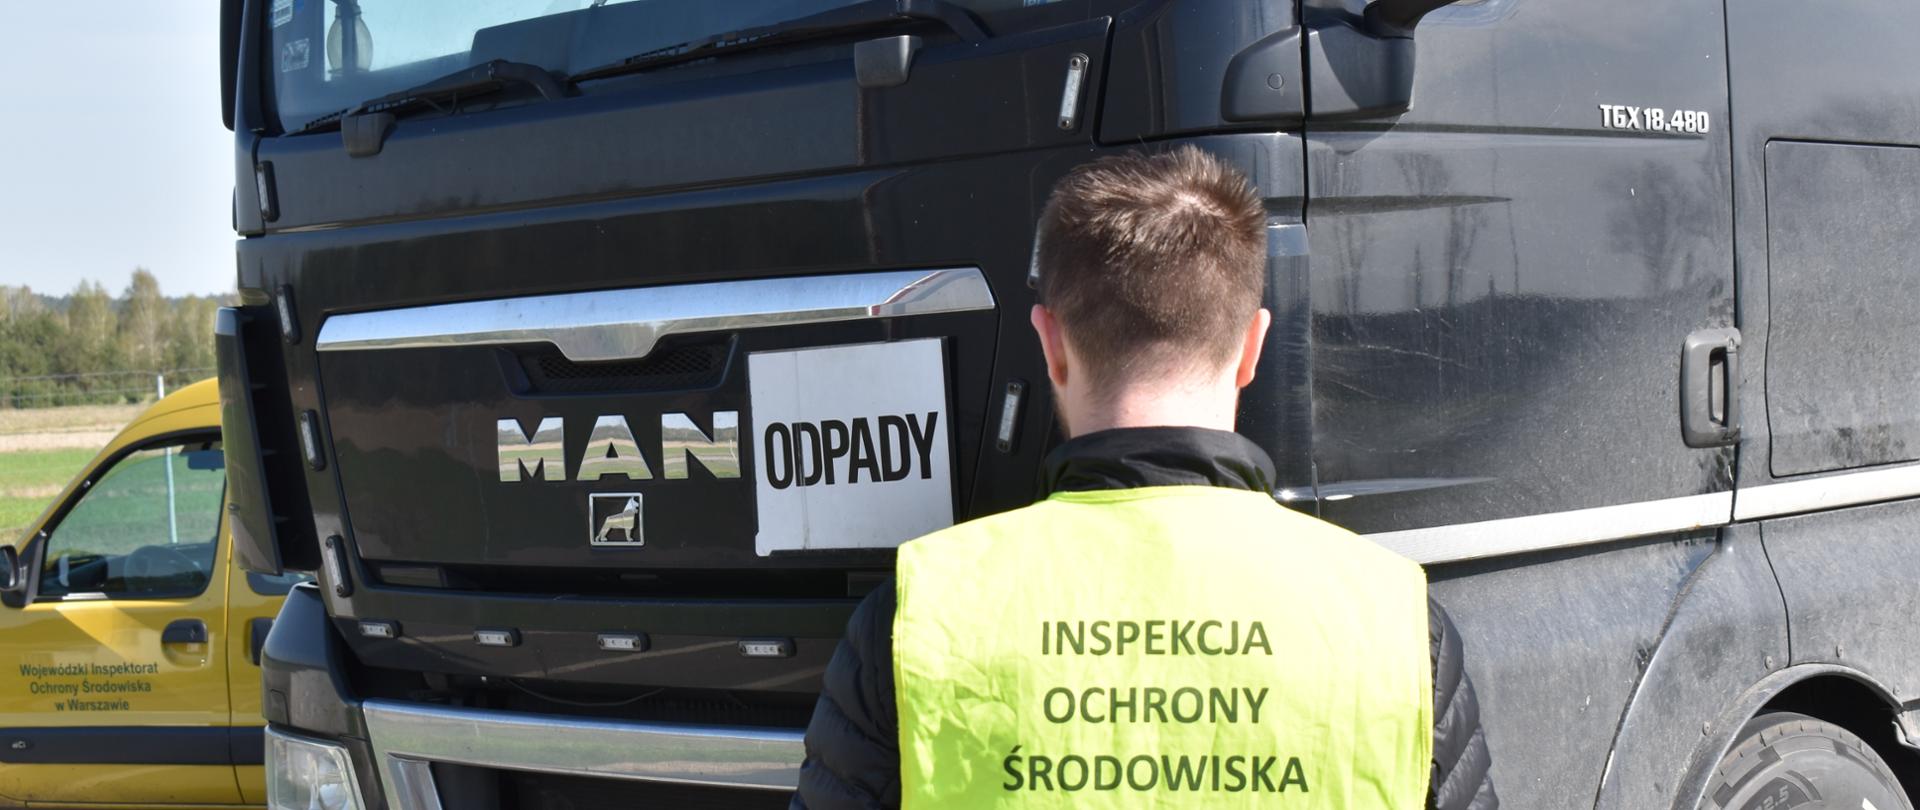 Inspektor Wojewódzkiego Inspektoratu Ochrony Środowiska w Warszawie prowadzi kontrolę samochodu ciężarowego.